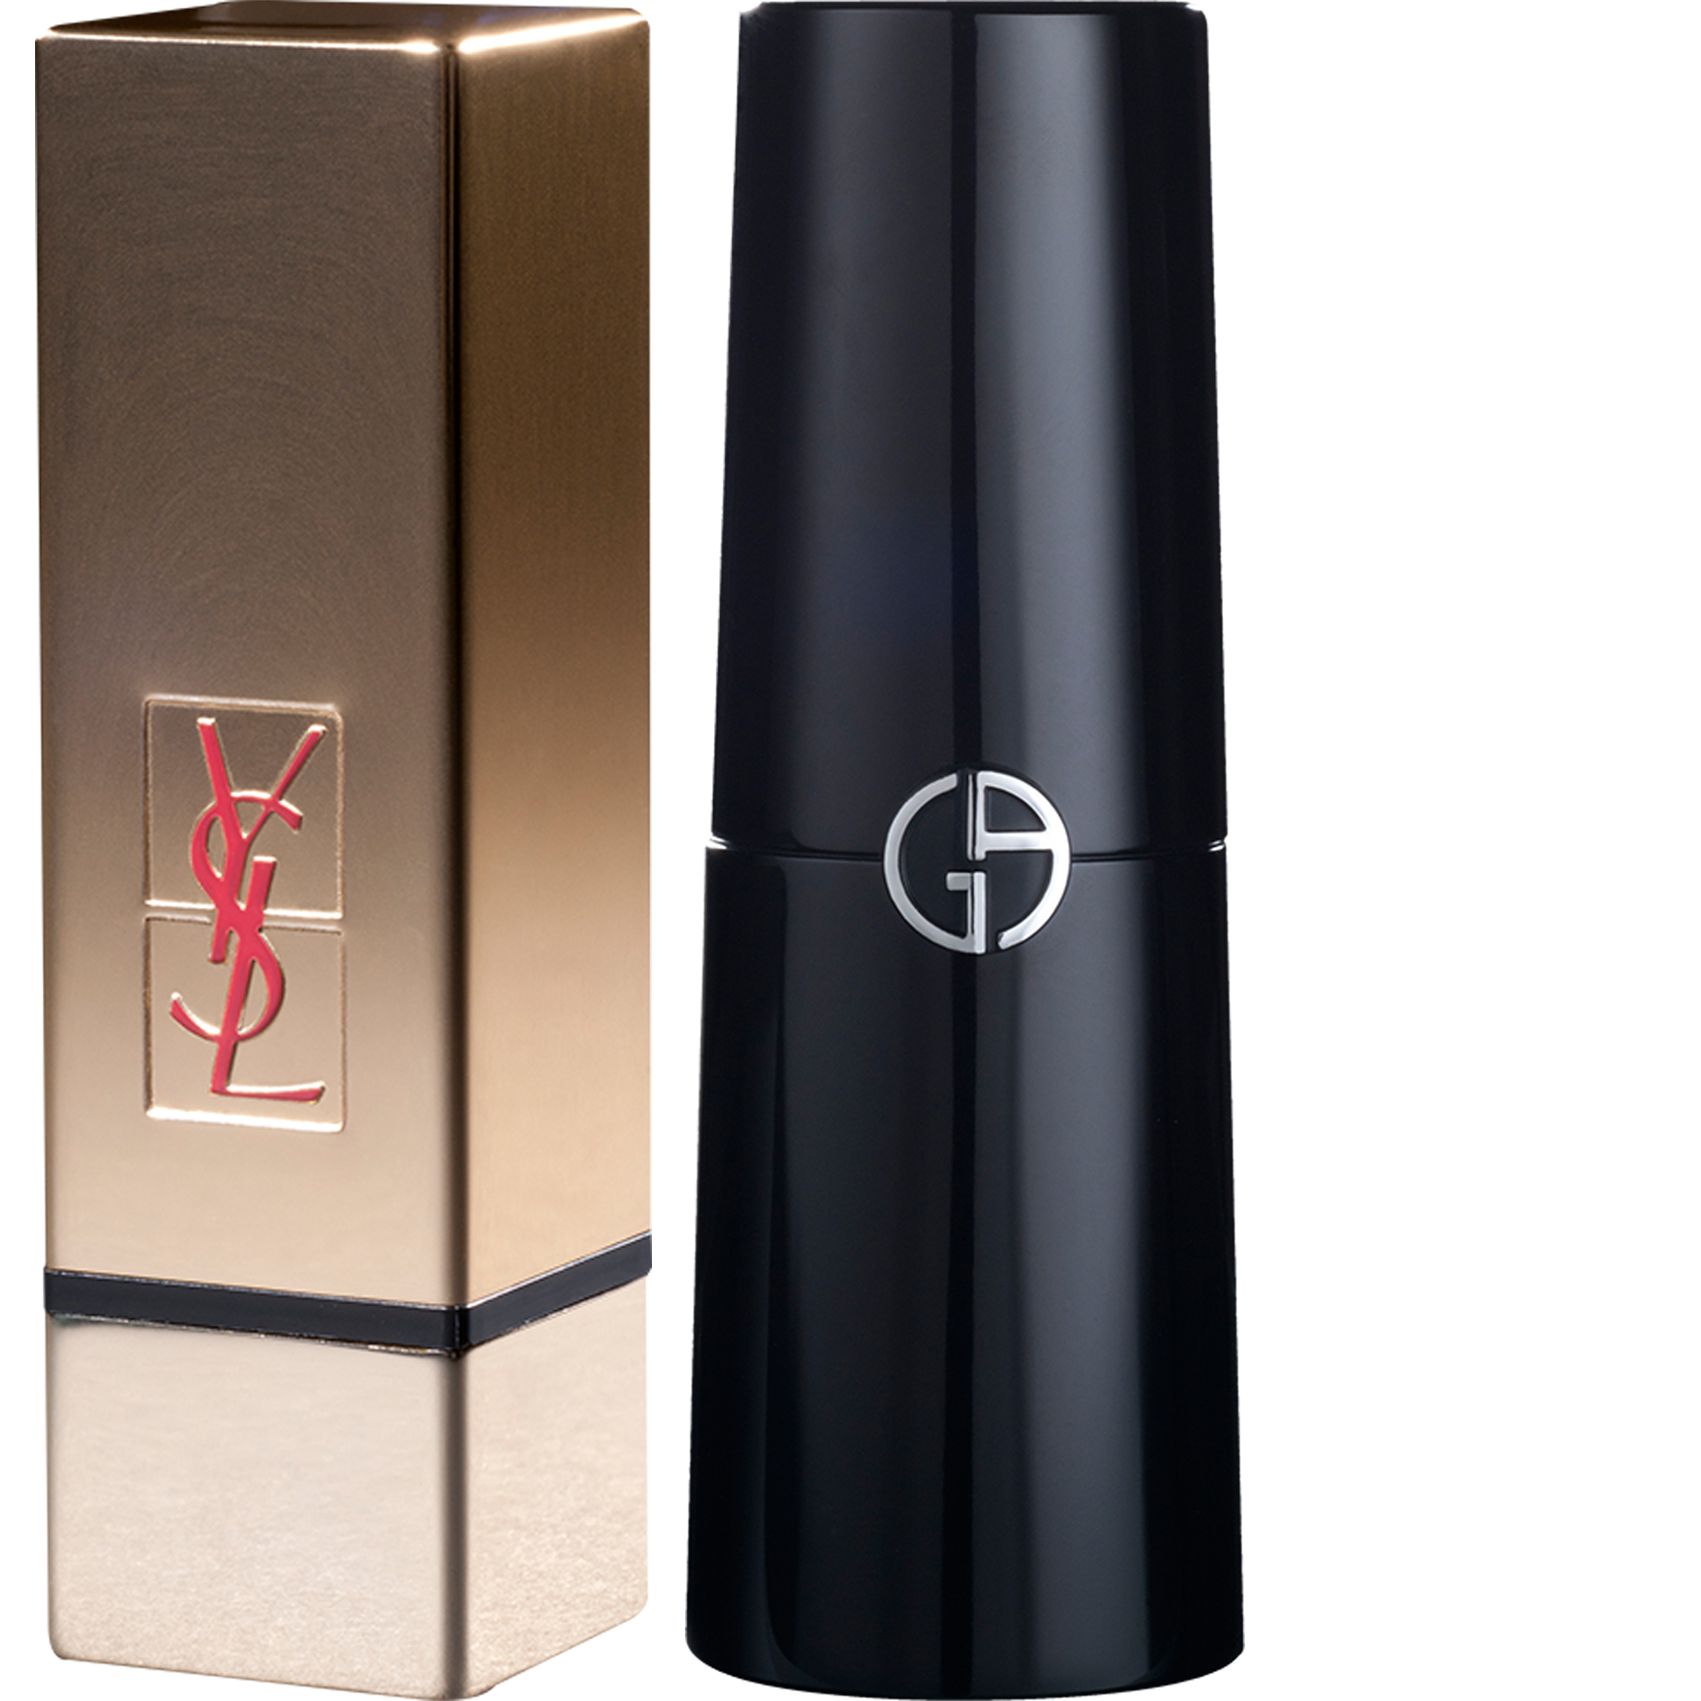 Yves Saint Laurent Pure Couture est un rouge à lèvres doré basé sur le design YSL et développé par Axilone. Le design cubique parfaitement incliné est en aluminium et le couvercle est profondément gravé. La décoration est en or anodisé. Le logo est partiellement gravé et recouvert d'une sérigraphie rouge. Pour la nouvelle version du rouge à lèvres sculptural et magnétique d'Armani